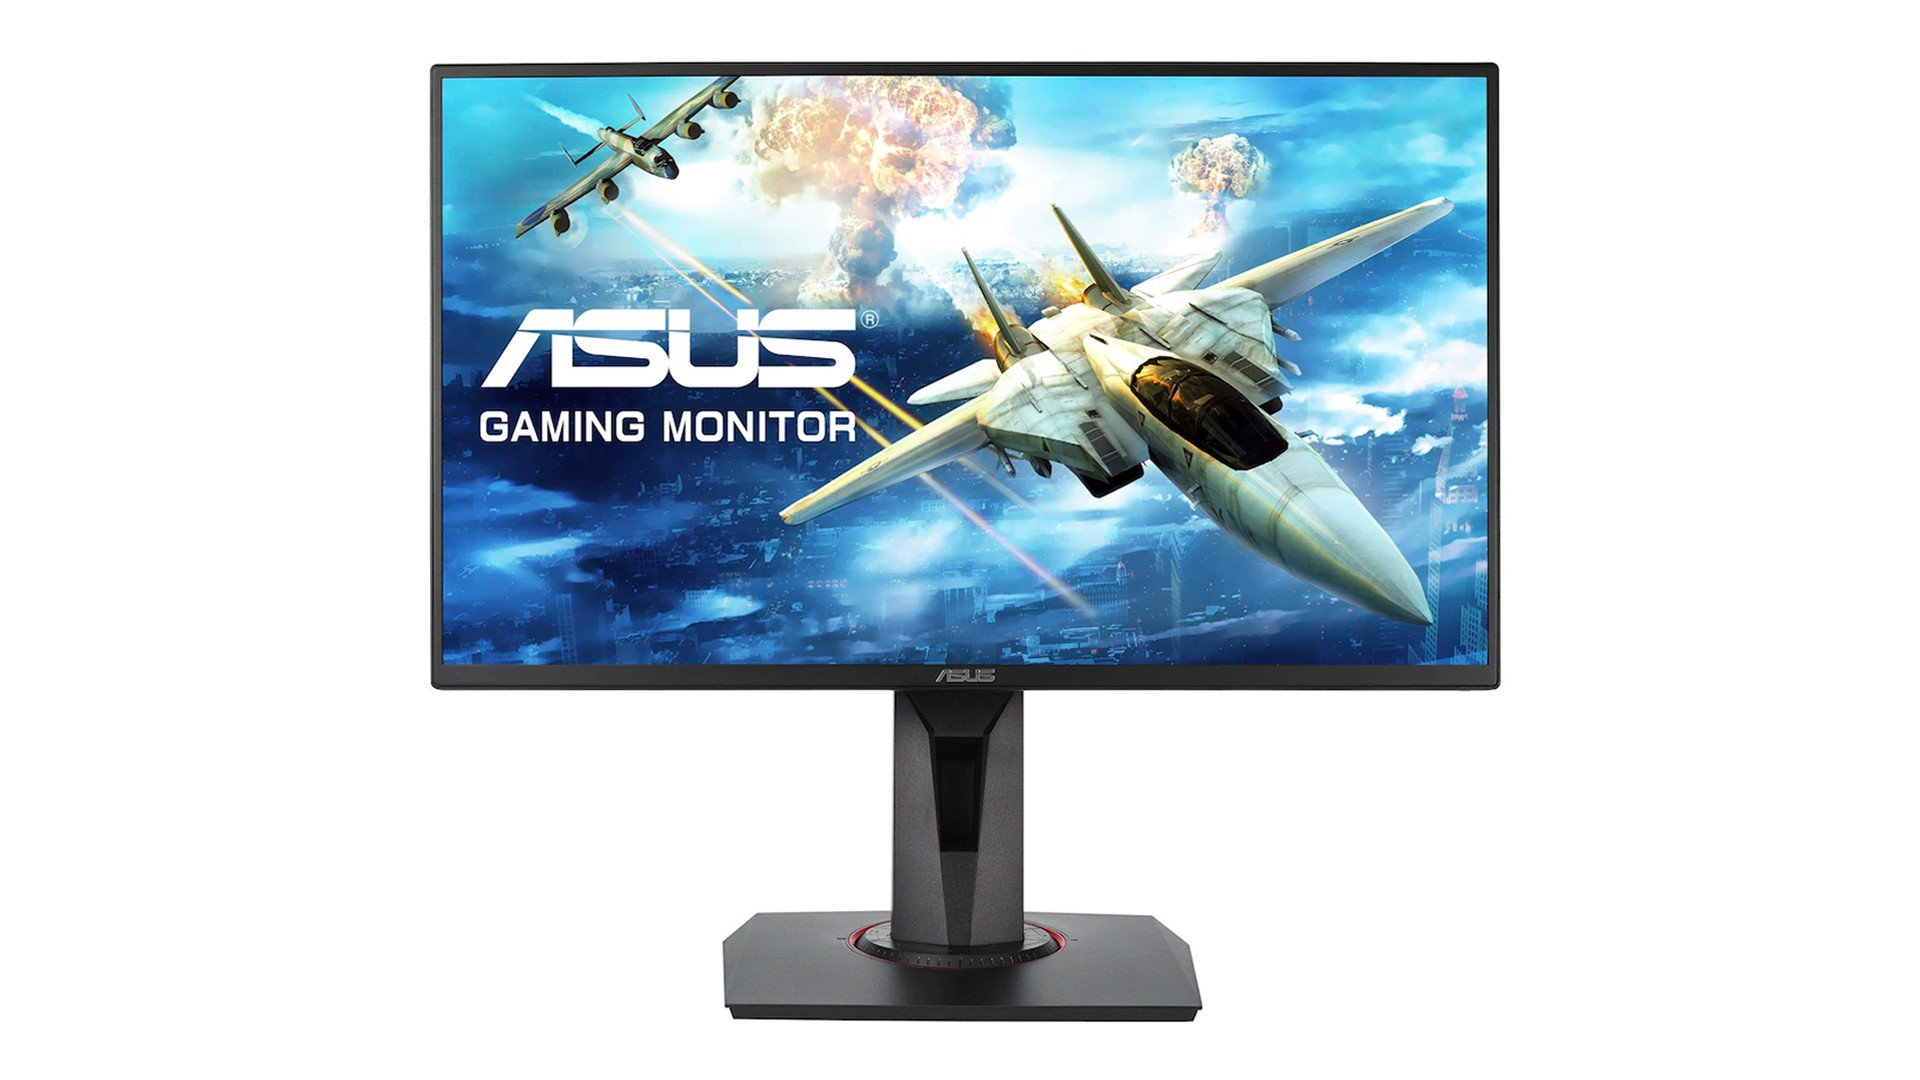 Gaming monitor xbox one - Die preiswertesten Gaming monitor xbox one auf einen Blick!